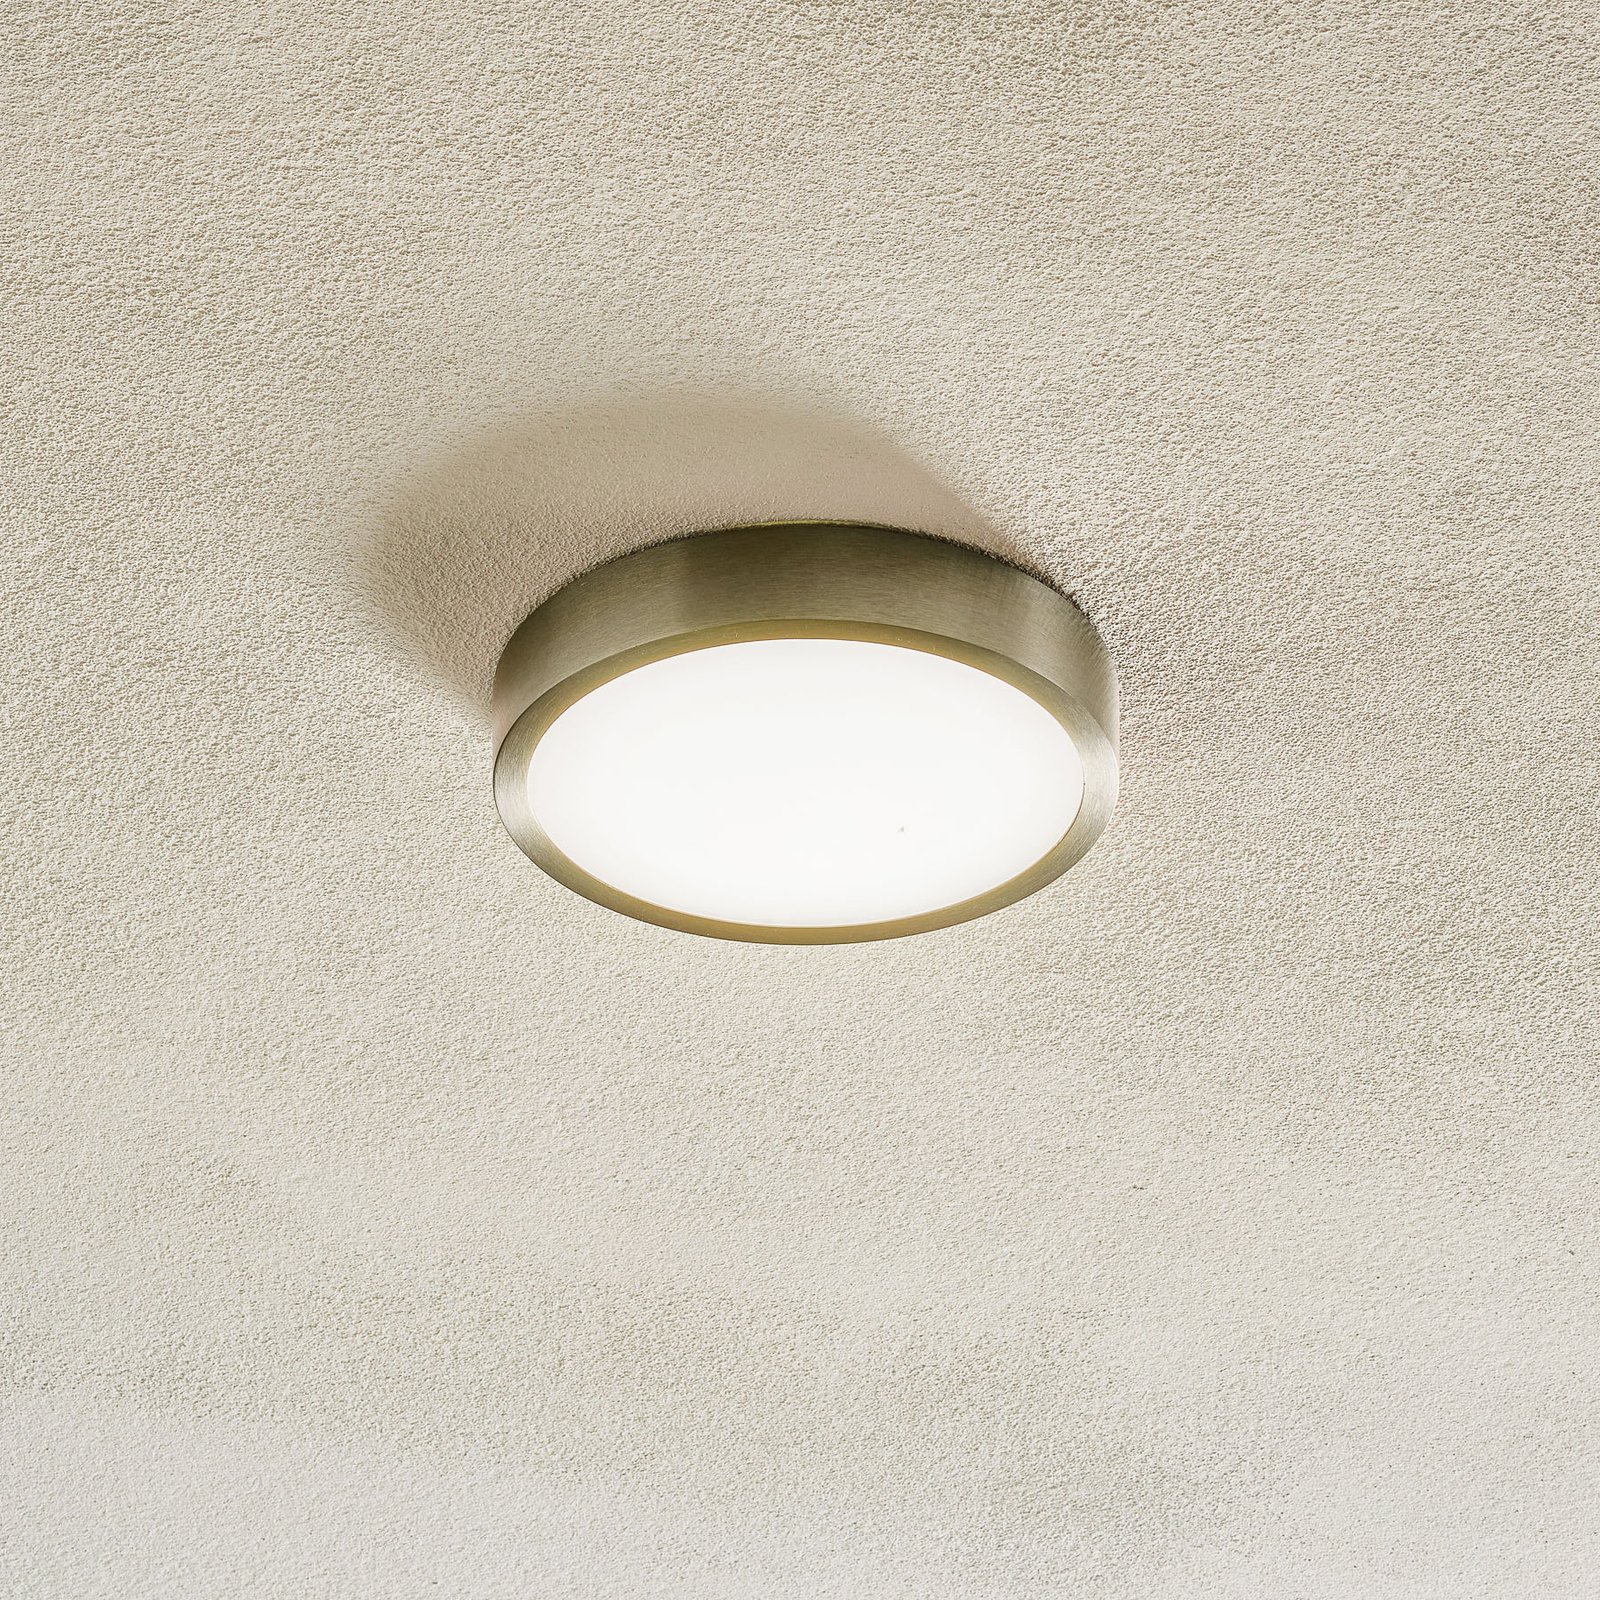 Φωτιστικό οροφής Bully LED, ματ νικέλιο, Ø 14 cm